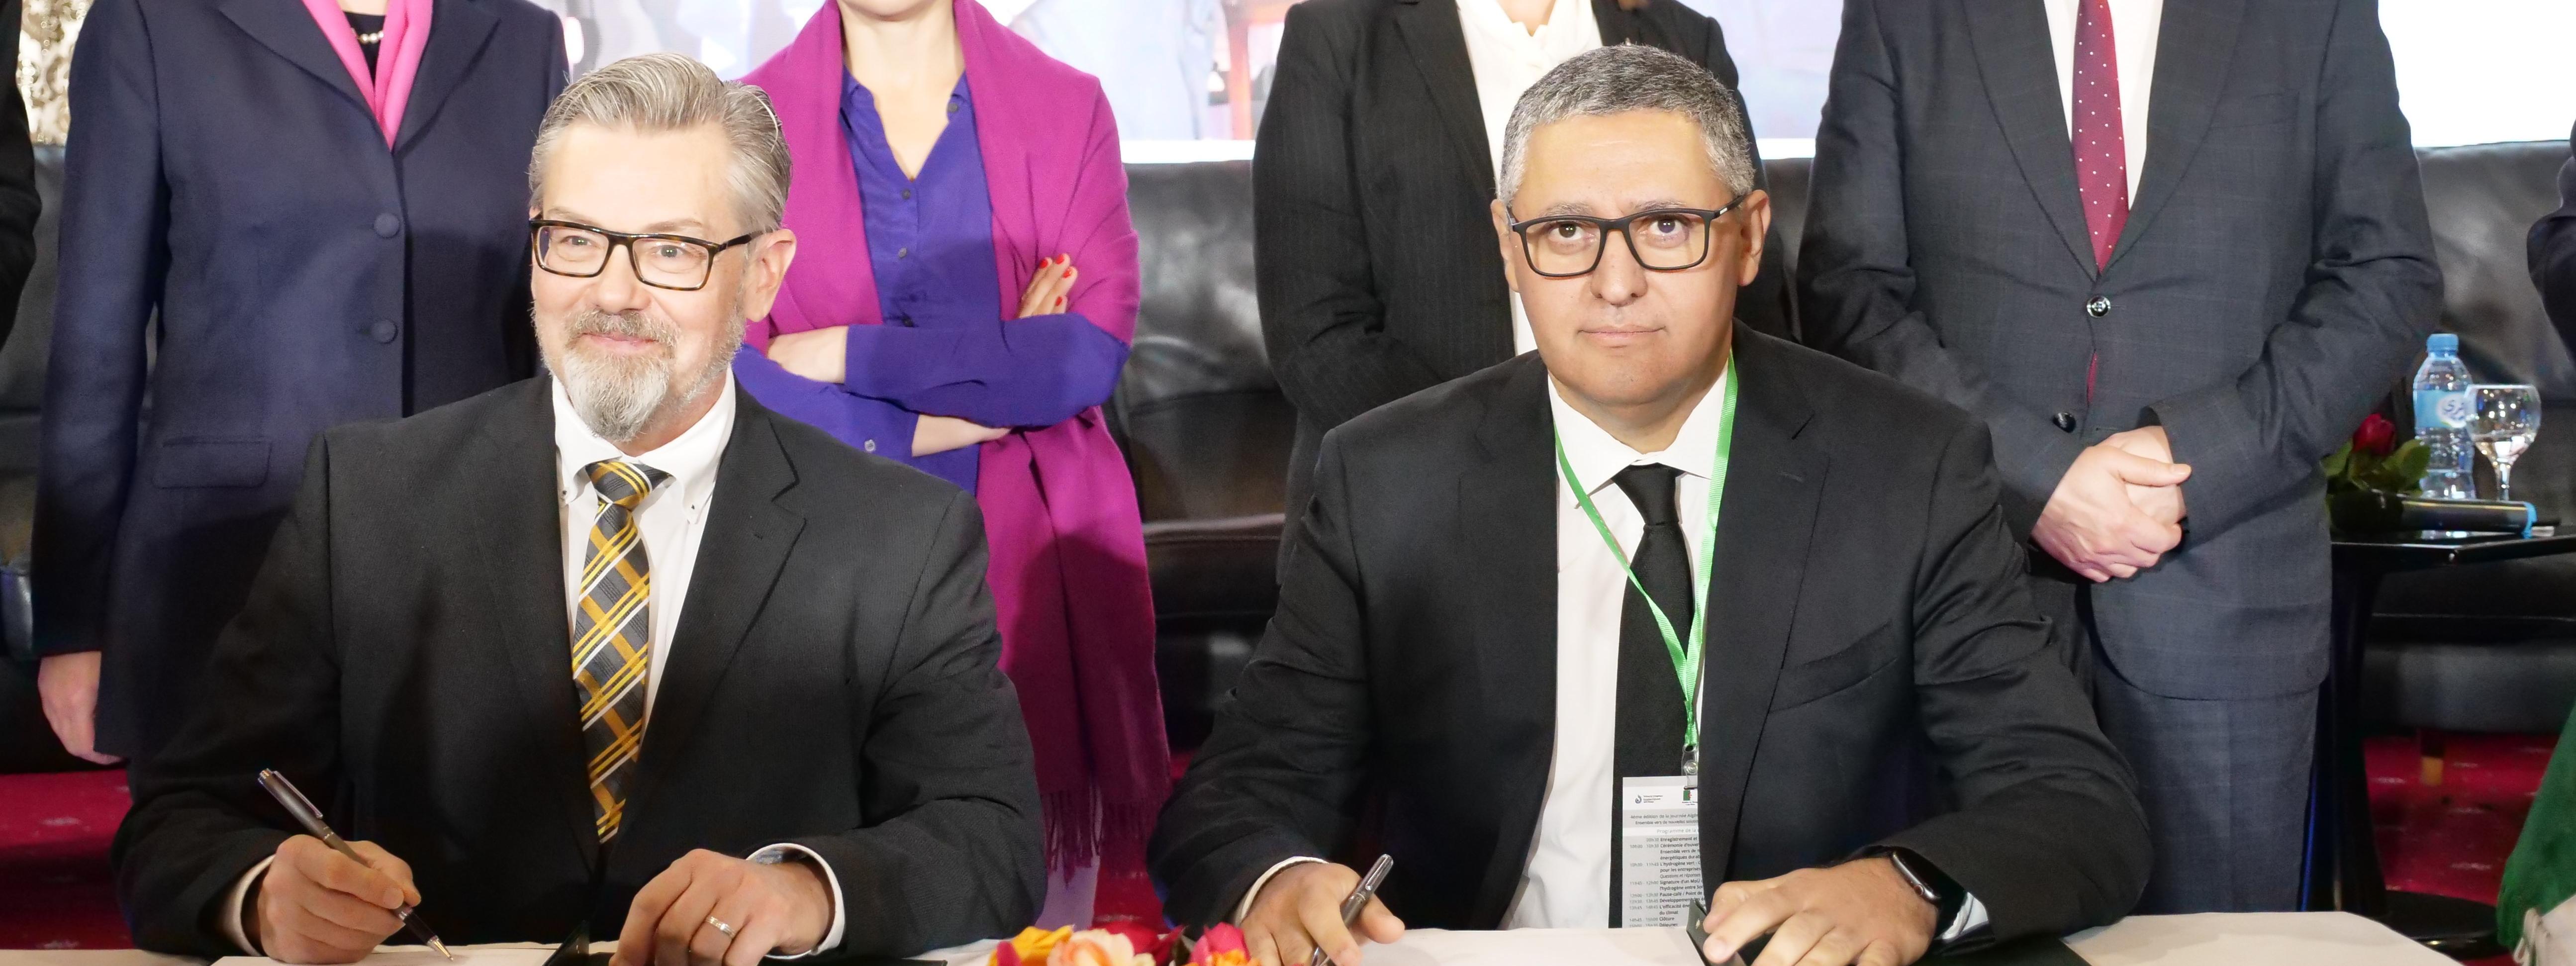 Deutsch-Algerische Wasserstoffpartnerschaft: VNG kooperiert mit algeri-schem Energieunternehmen Sonatrach im grünen Wasserstoffbereich